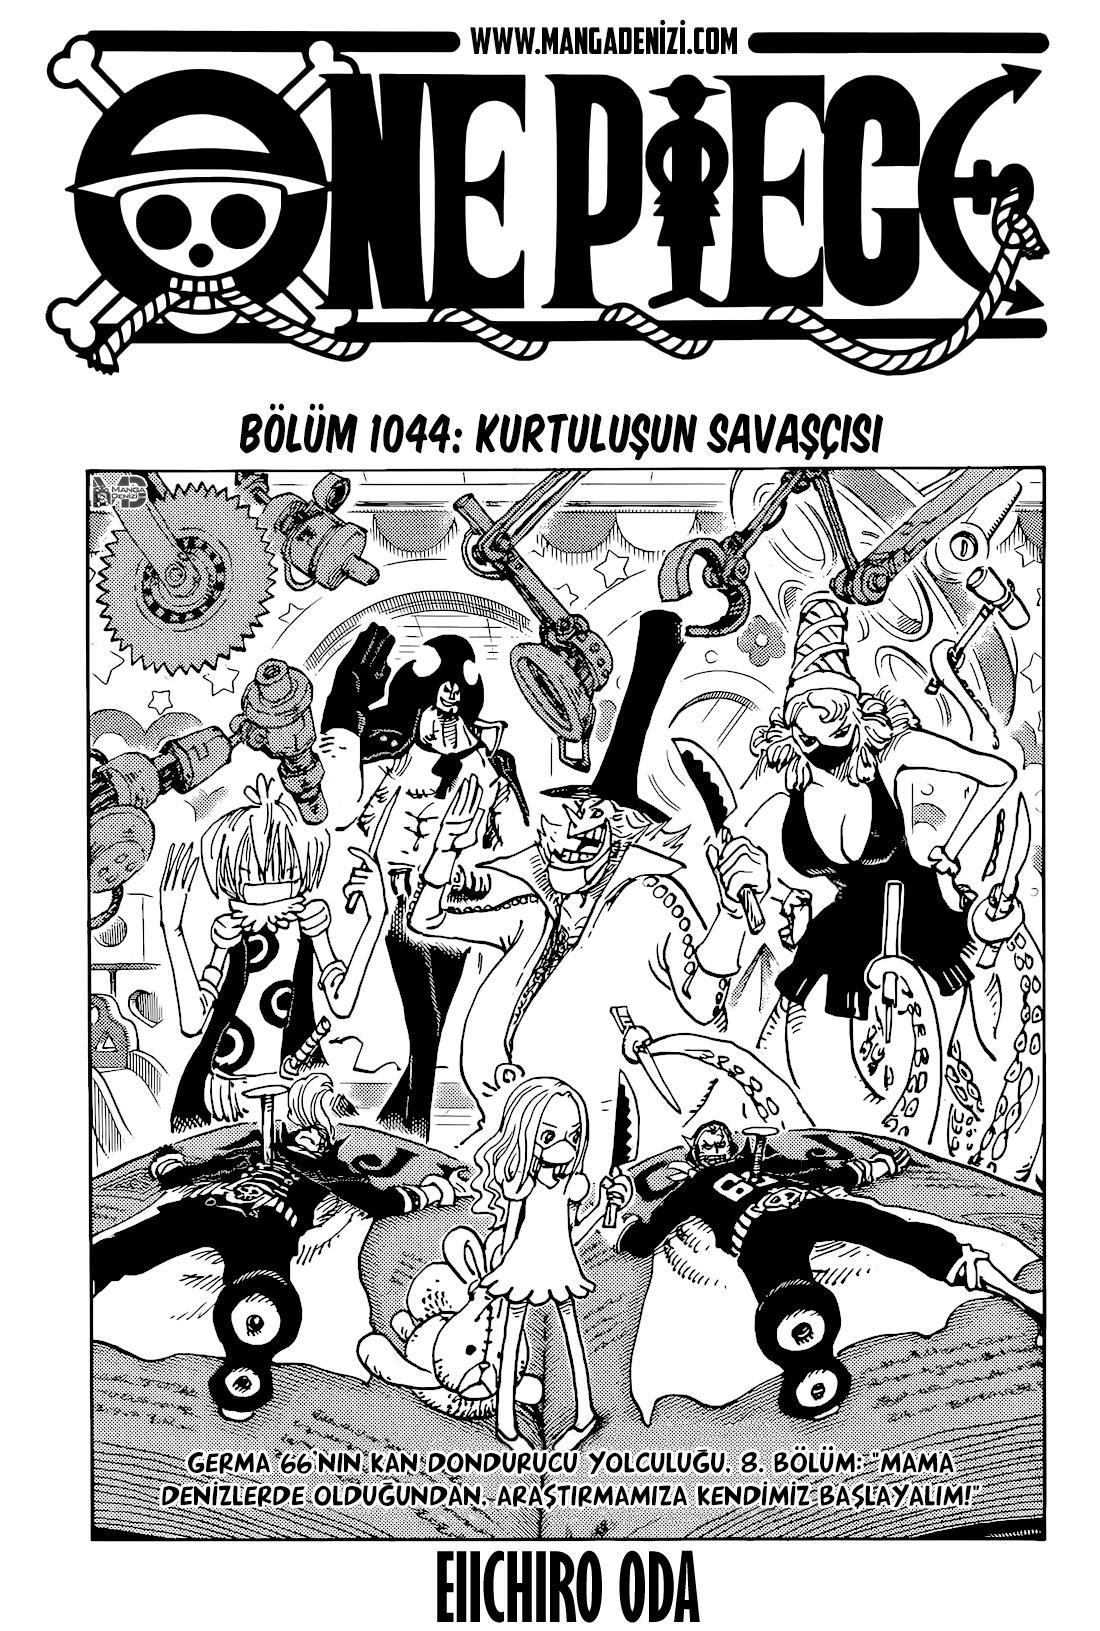 One Piece mangasının 1044 bölümünün 2. sayfasını okuyorsunuz.